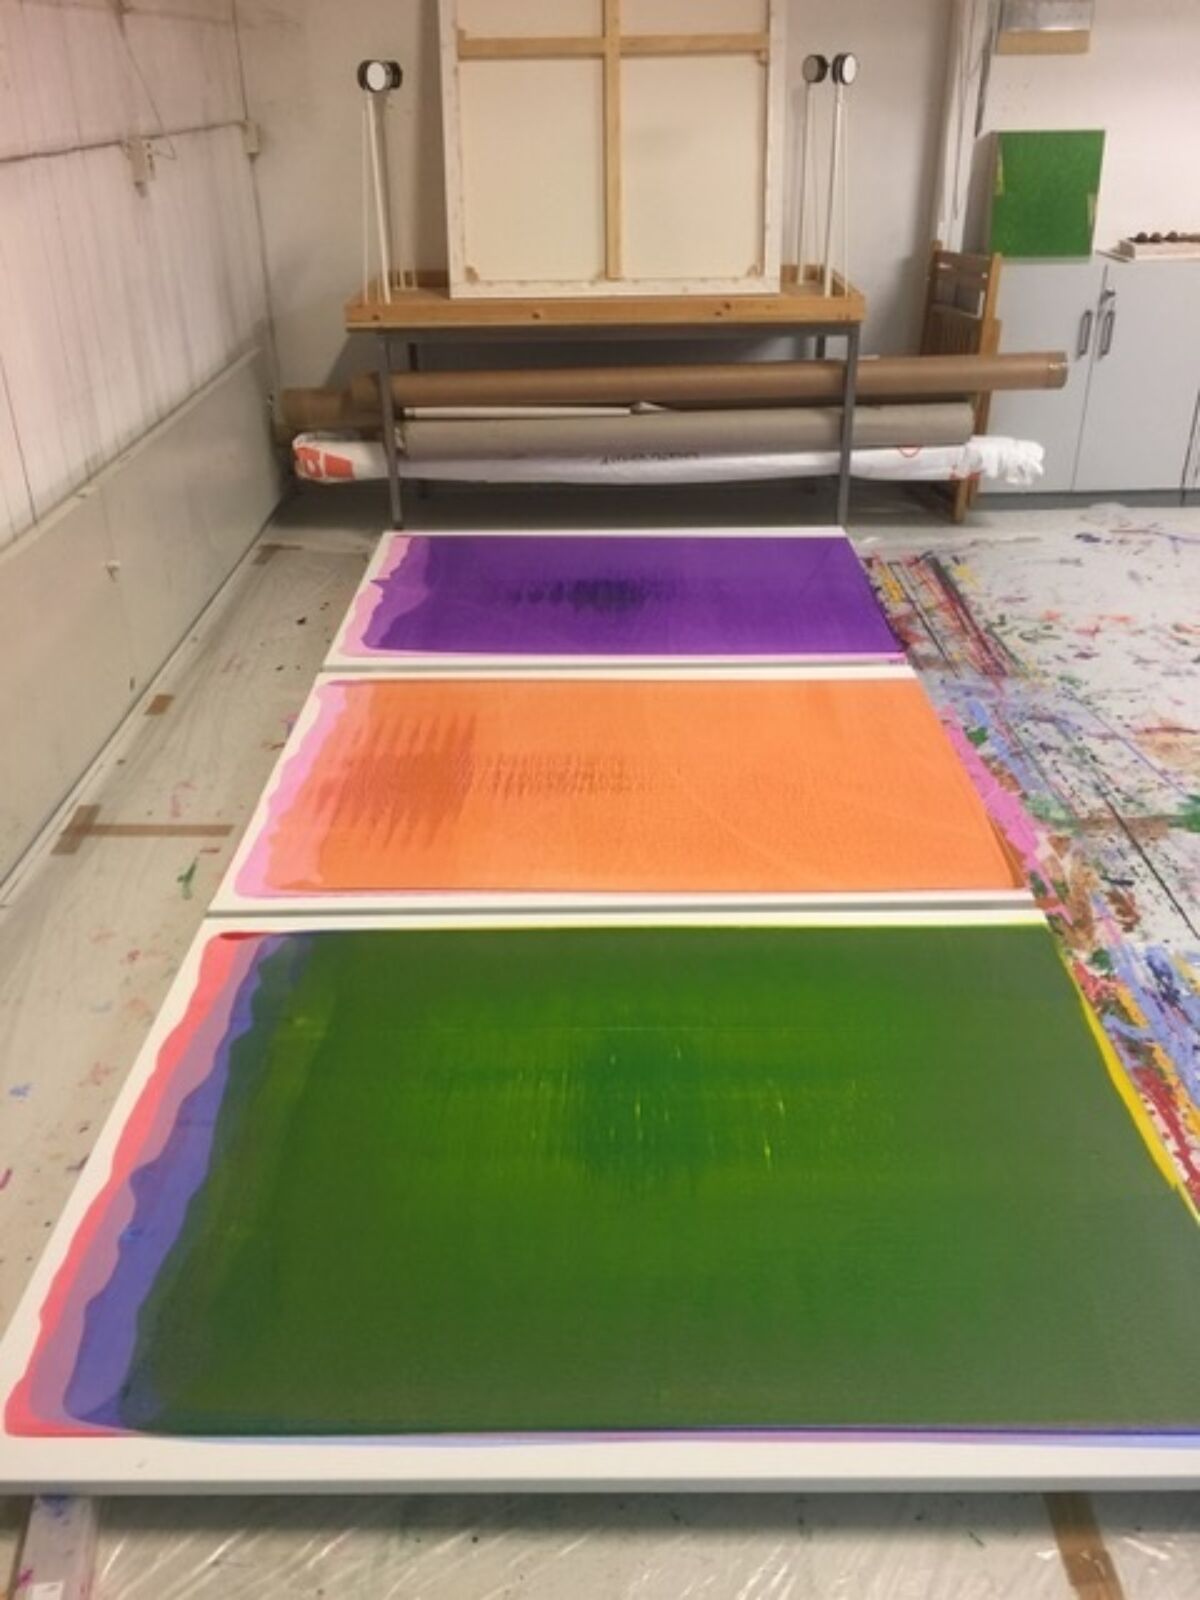 Tre fargerike malerier ligger på et gulv.